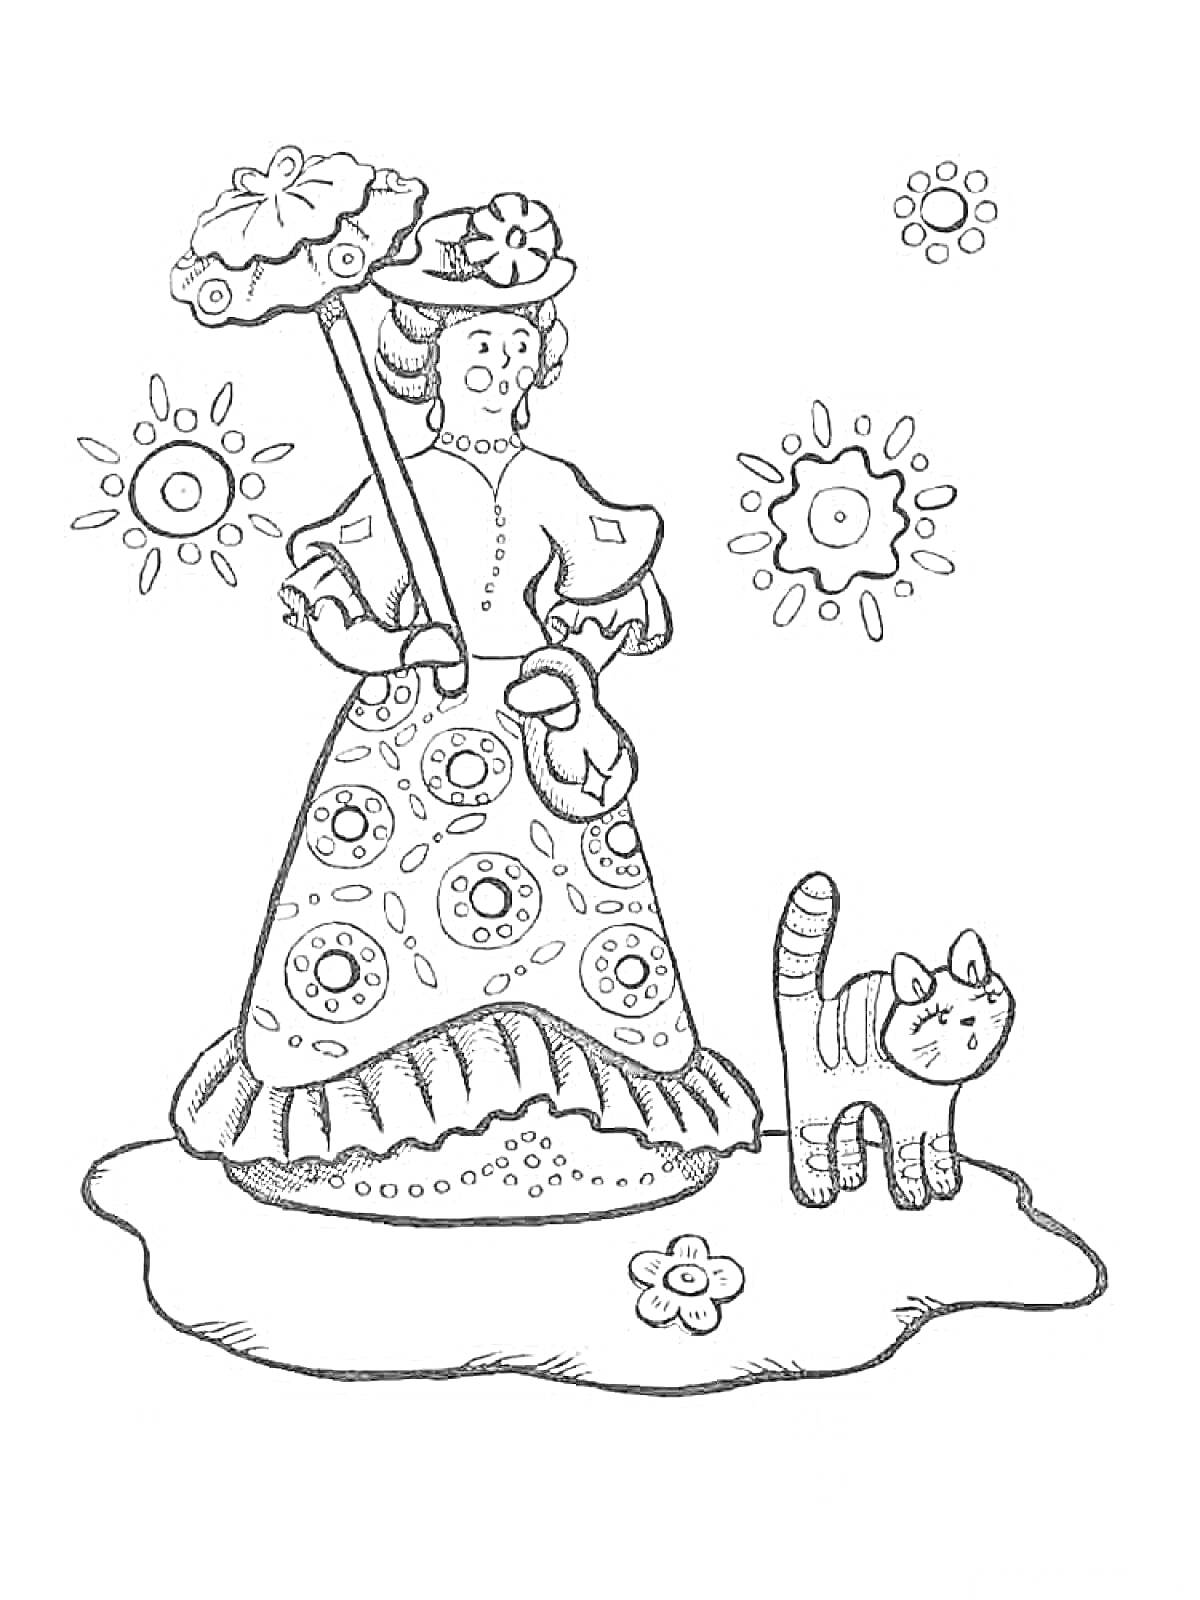 Дымковская игрушка - женщина с зонтиком и котом, украшенная цветочными орнаментами